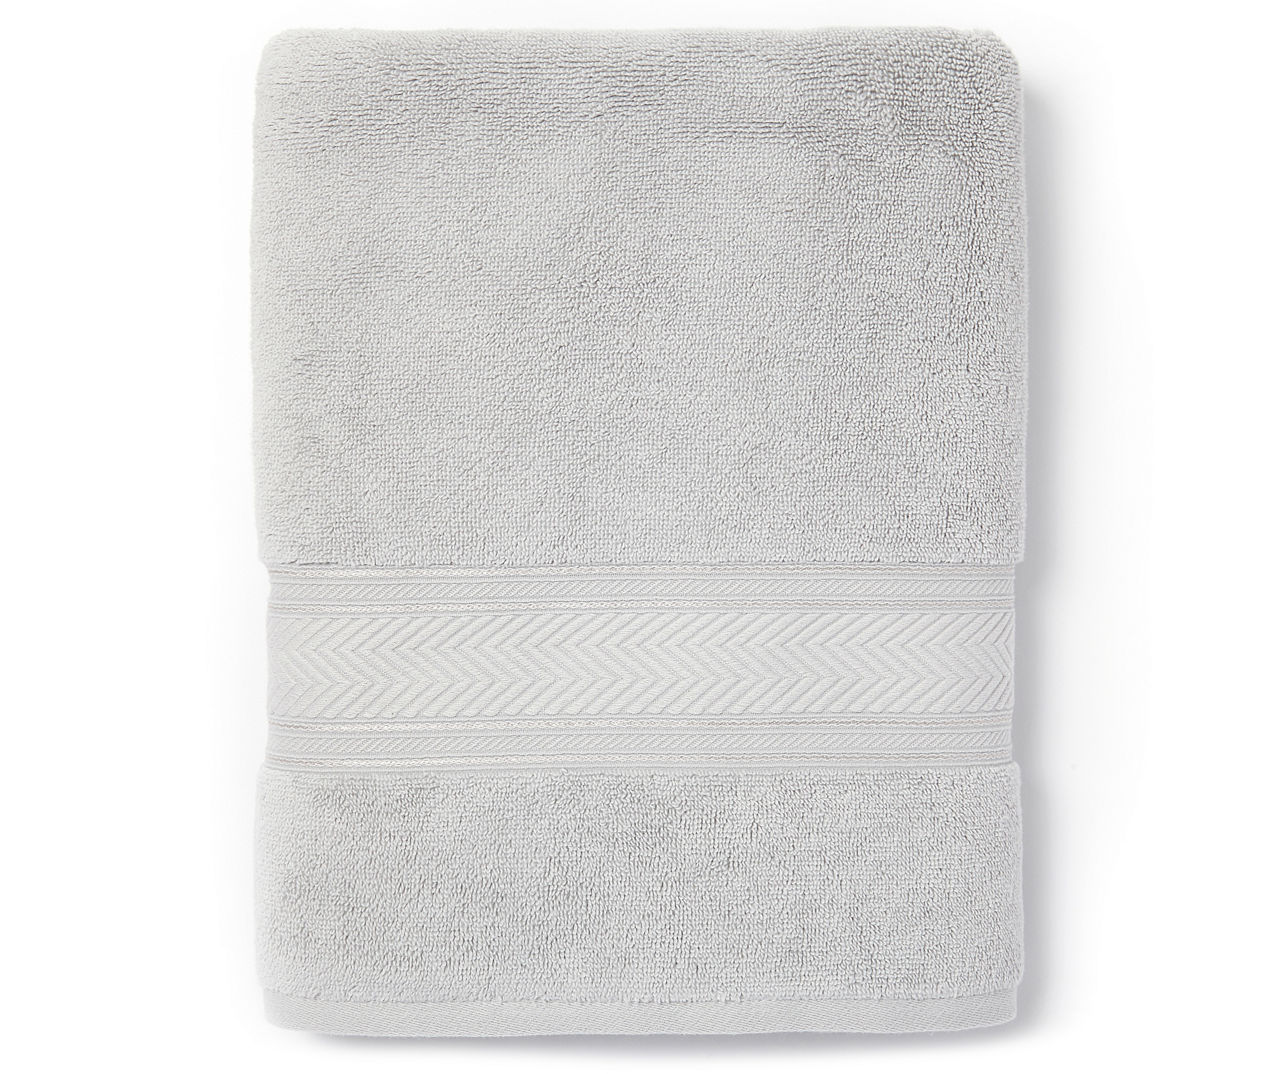 Aprima Aprima Harbor Gray Bathroom Towels | Big Lots